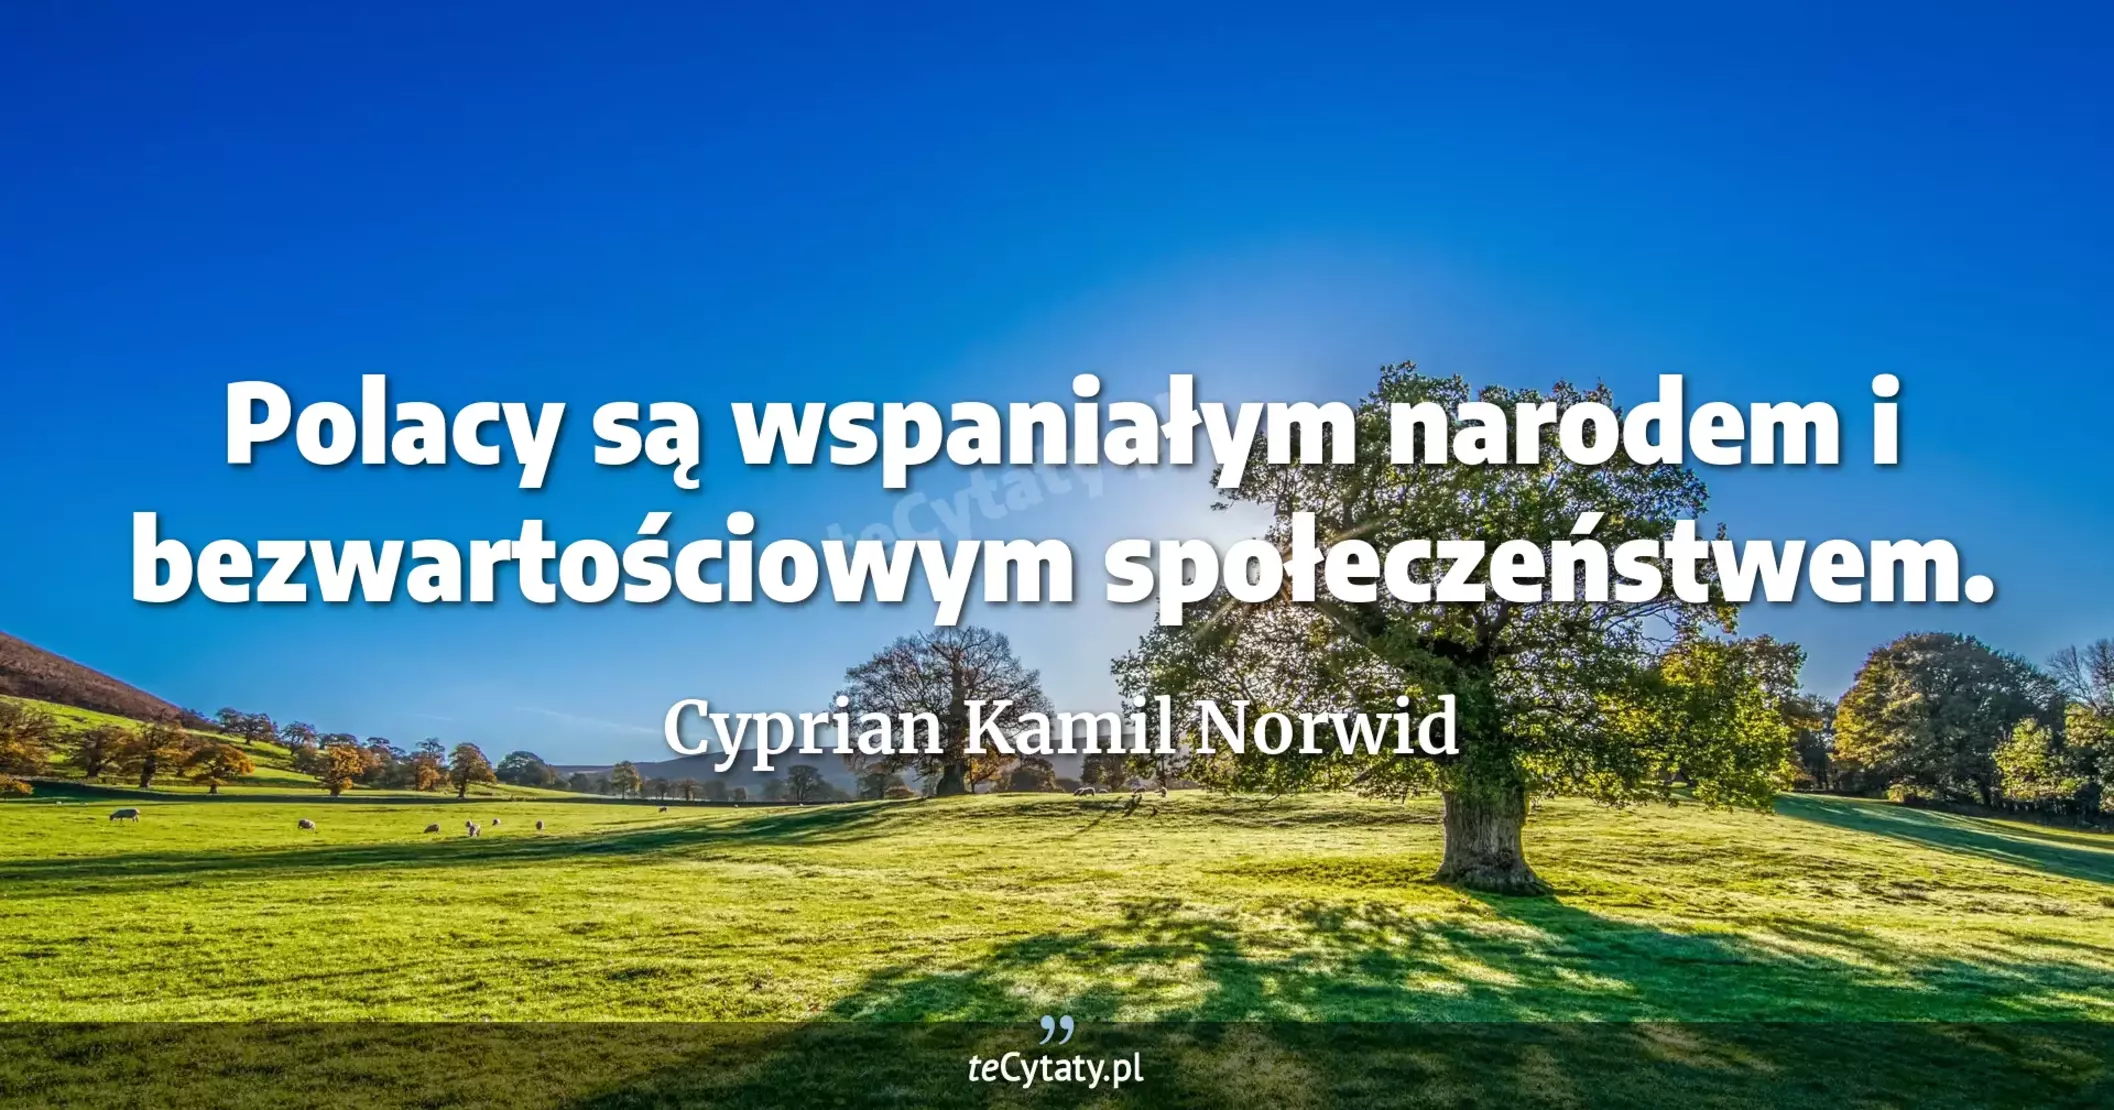 Polacy są wspaniałym narodem i bezwartościowym społeczeństwem. - Cyprian Kamil Norwid